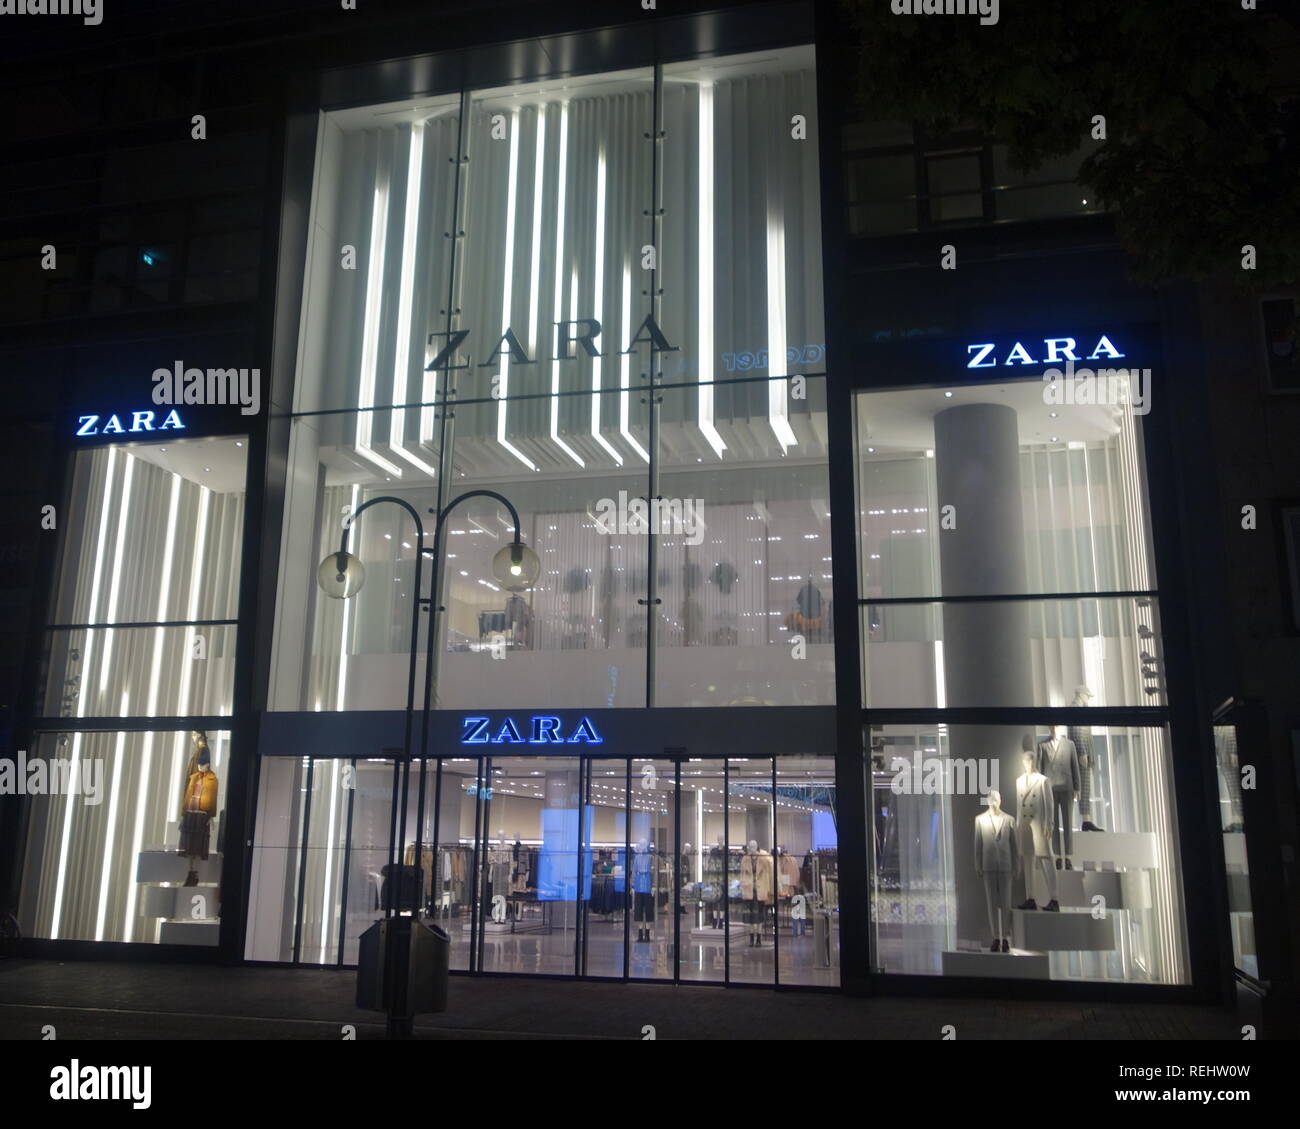 ZARA Köln Schildergasse, die Zara Shop auf der Schildergasse in Köln - der  belebtesten Einkaufsstraße in Europa Stockfotografie - Alamy